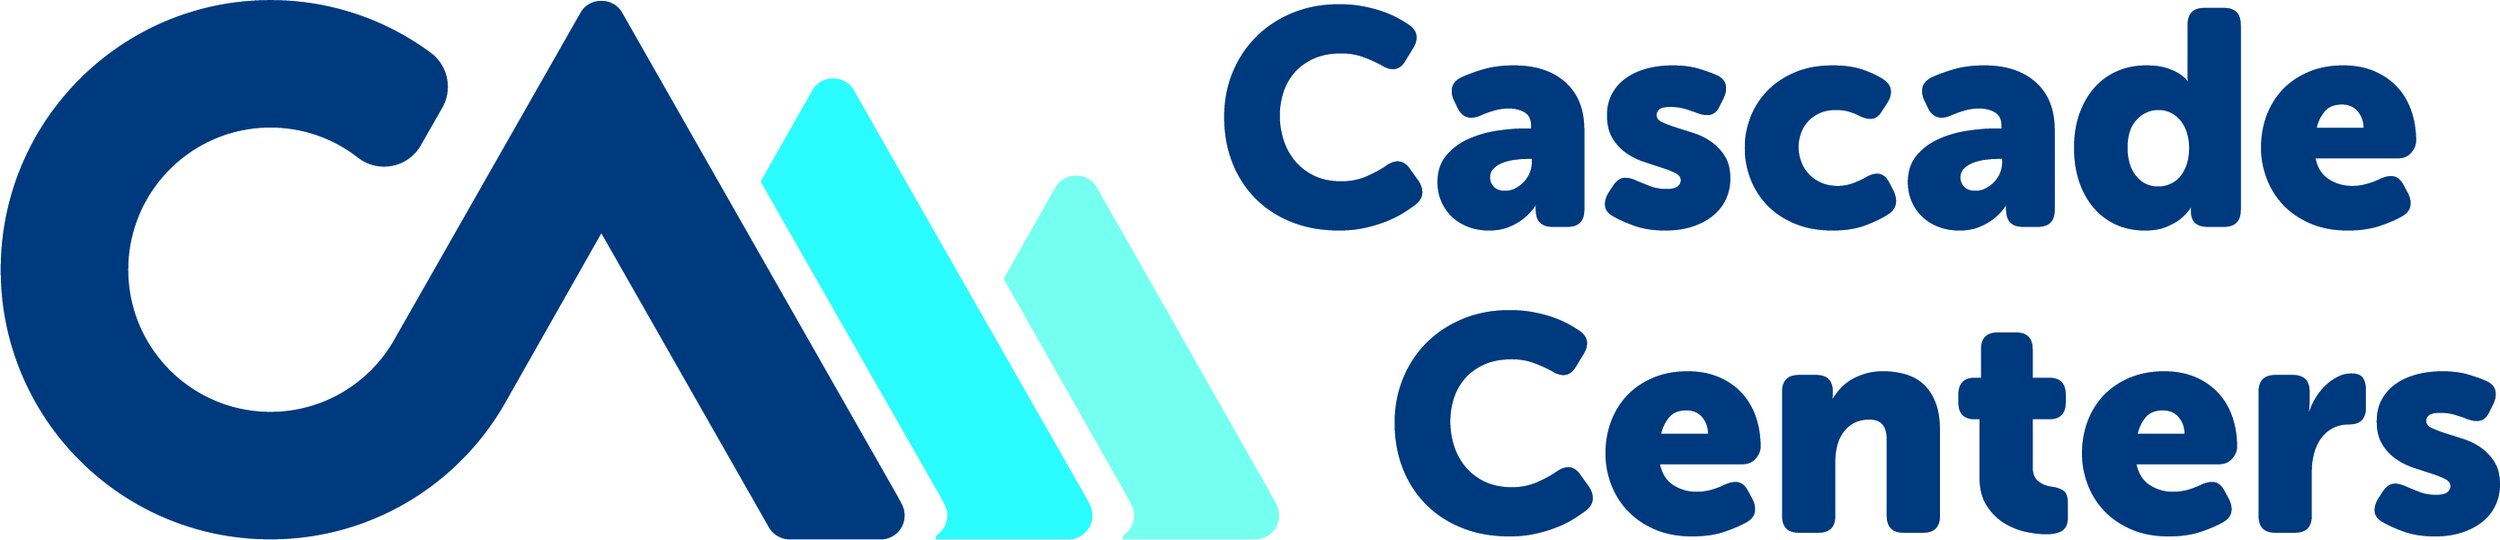 Cascade Centers, link to cascadecenters.com/